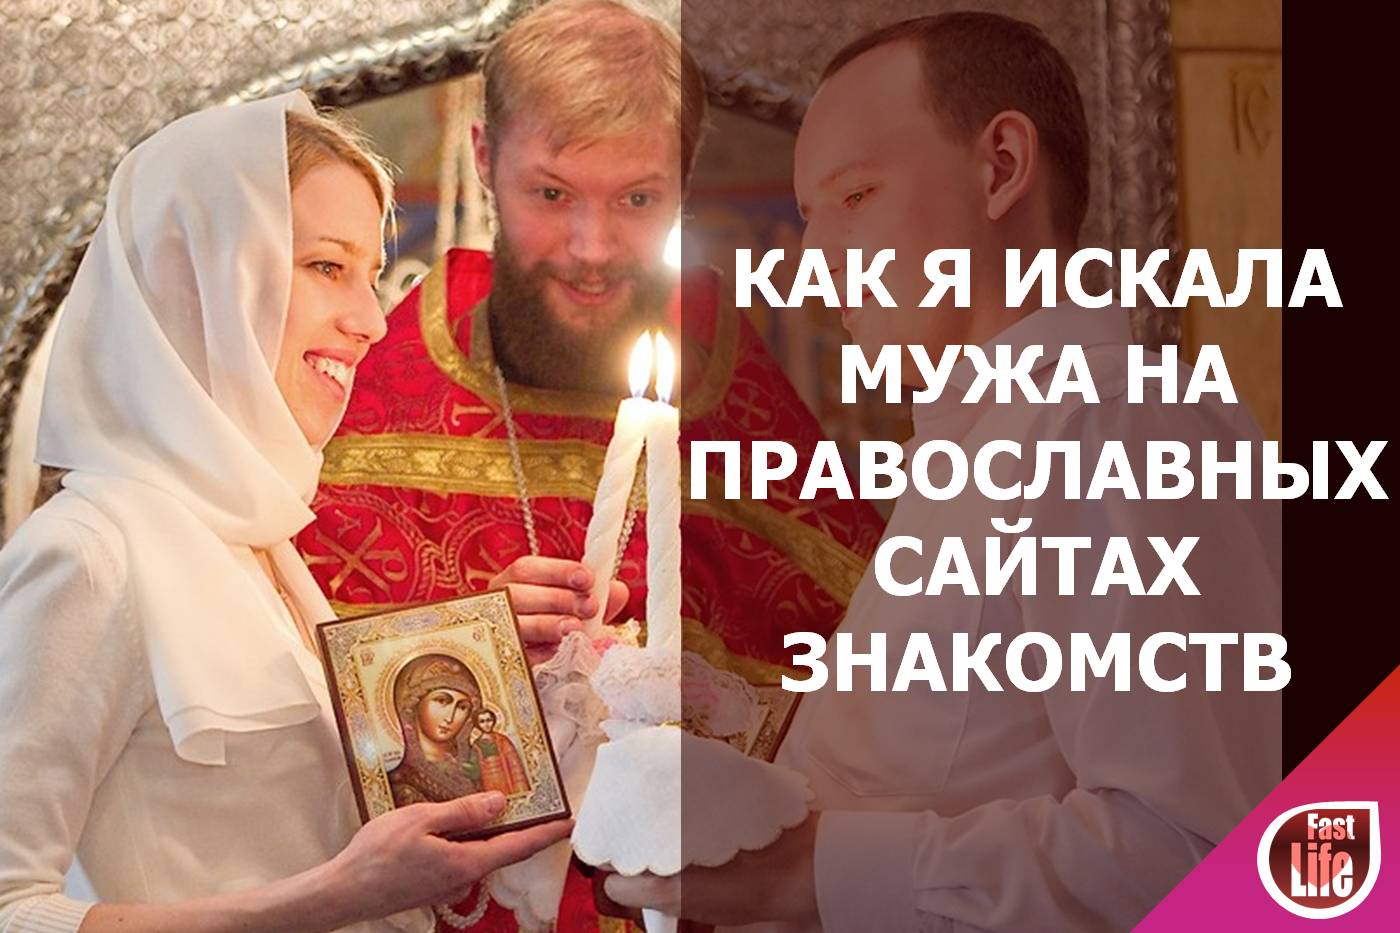 Православные знакомства для создания семьи. Как я искала мужа на православных сайтах знакомств